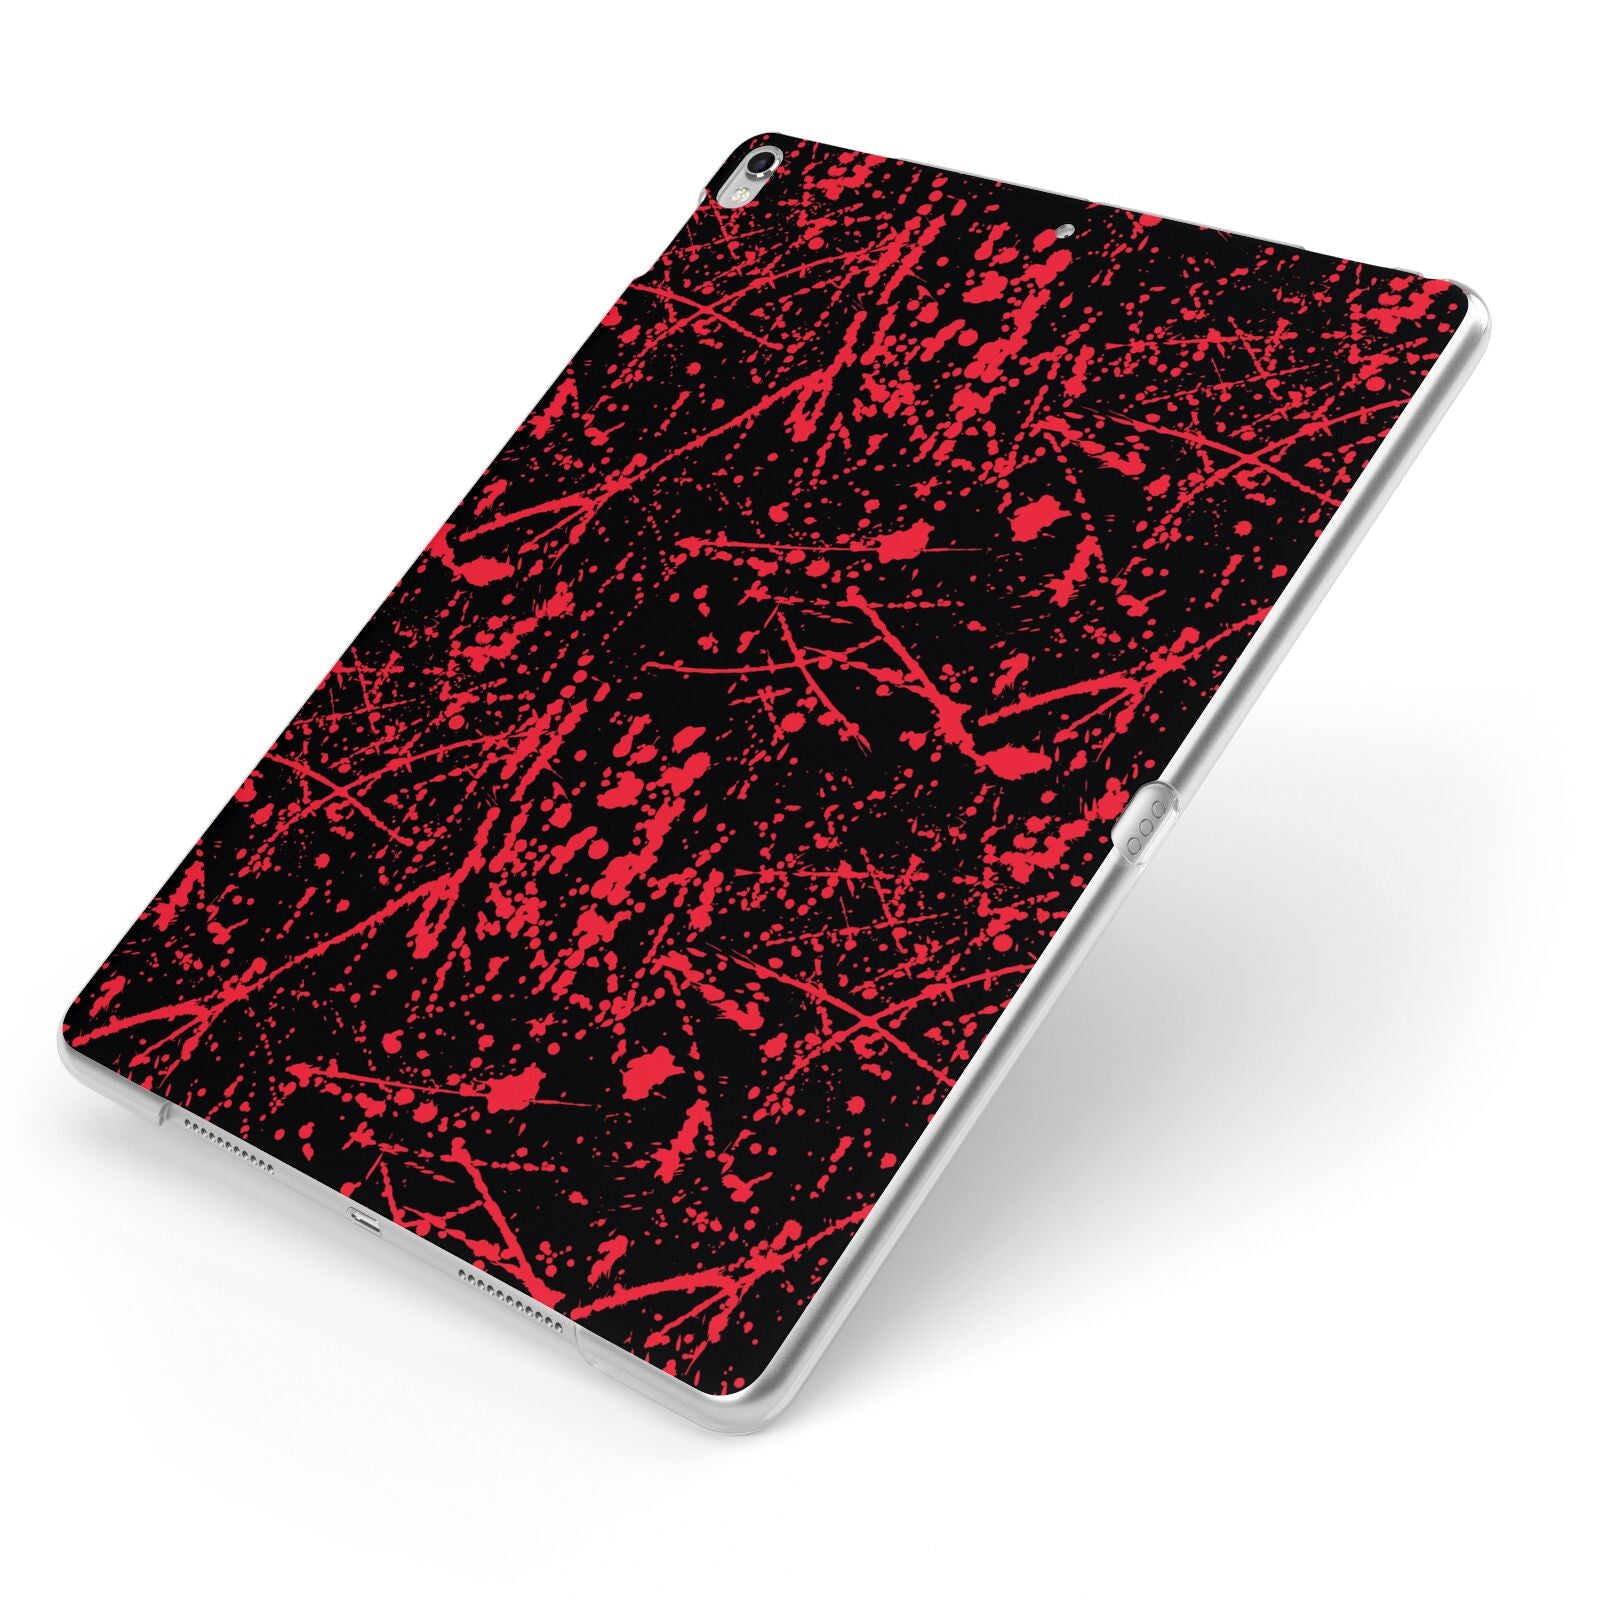 Blood Splatters Apple iPad Case on Silver iPad Side View